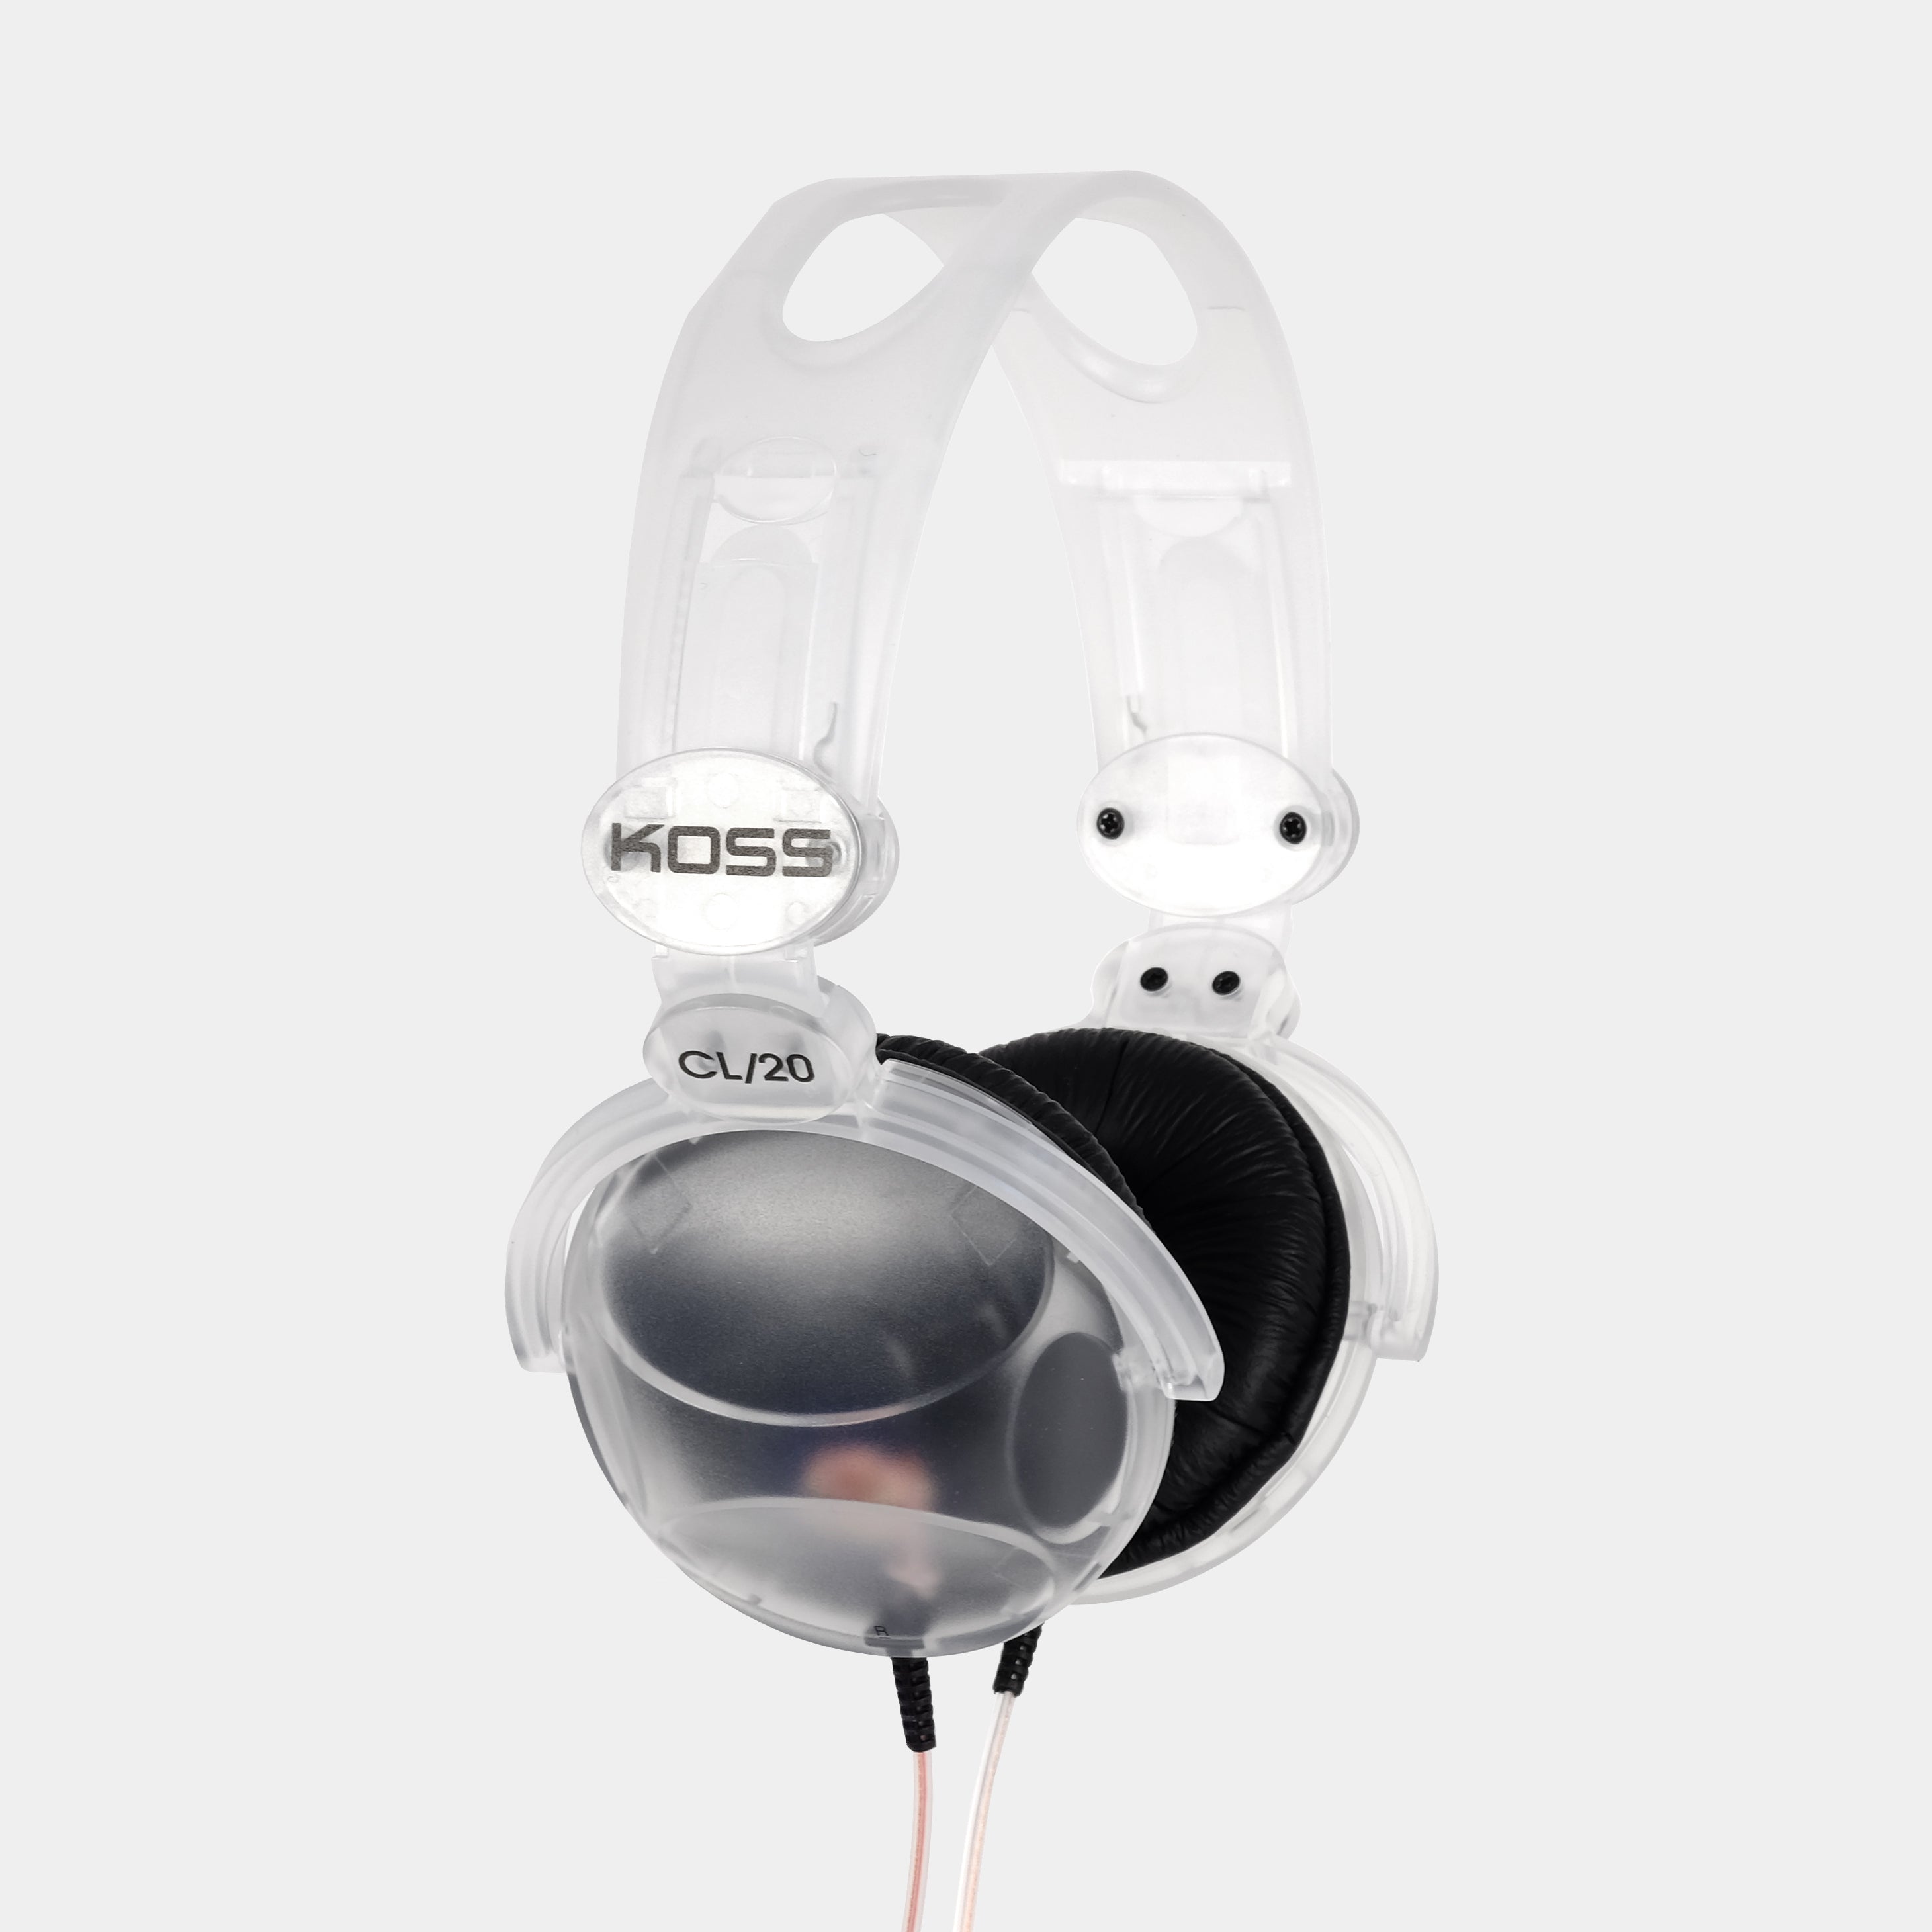 Koss CL/20 Clear On-Ear Headphones